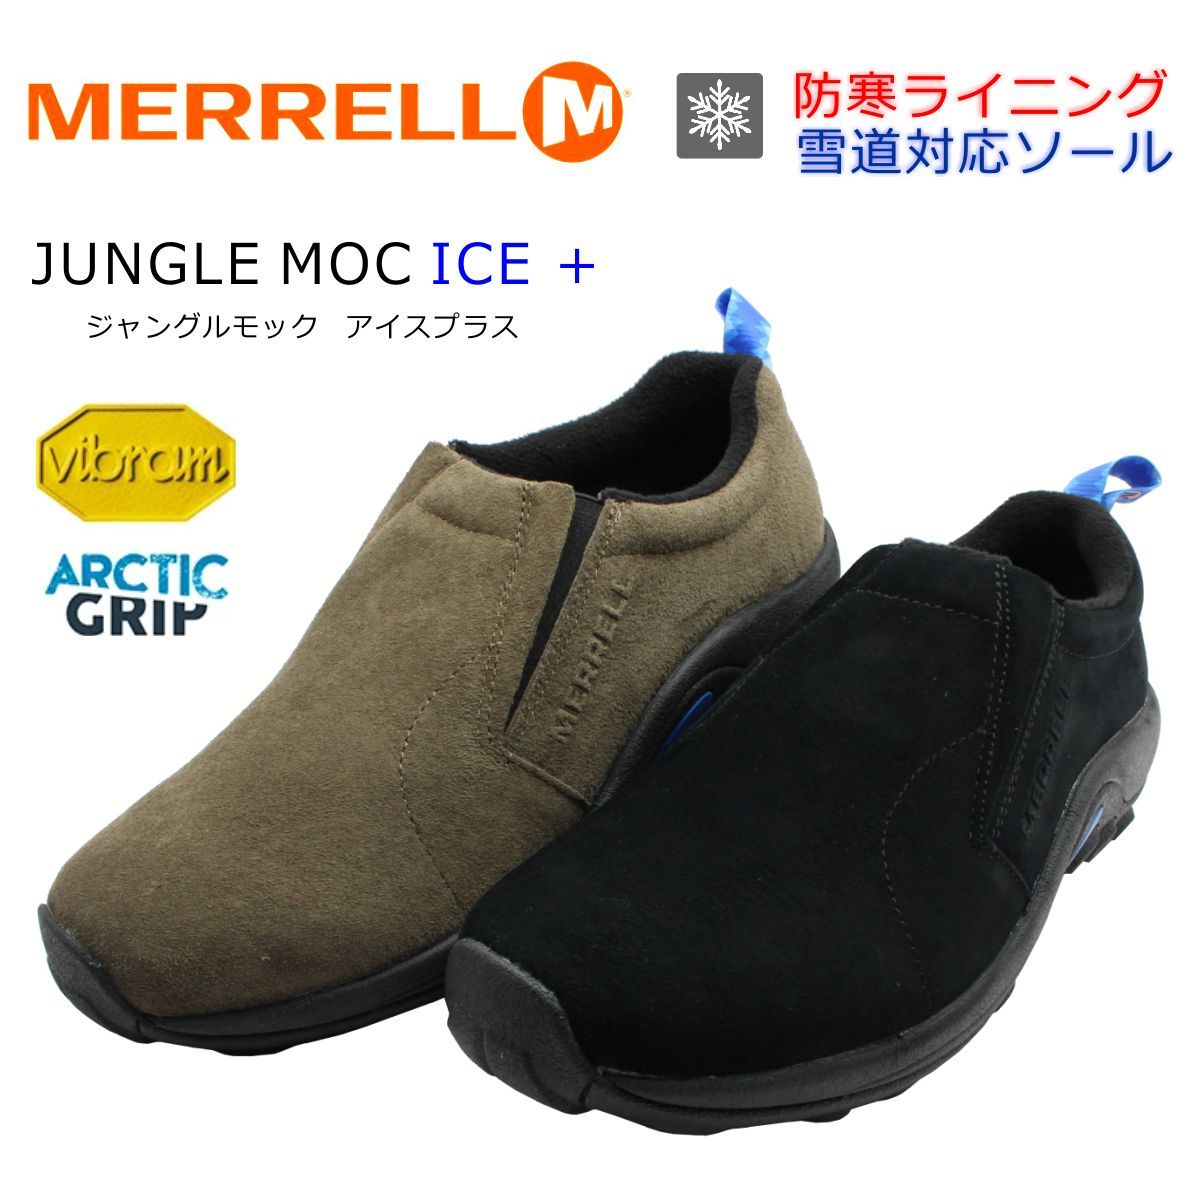 メレル メンズ MERRELL JUNGLEMOC ICE+ ジャングルモック アイスプラス